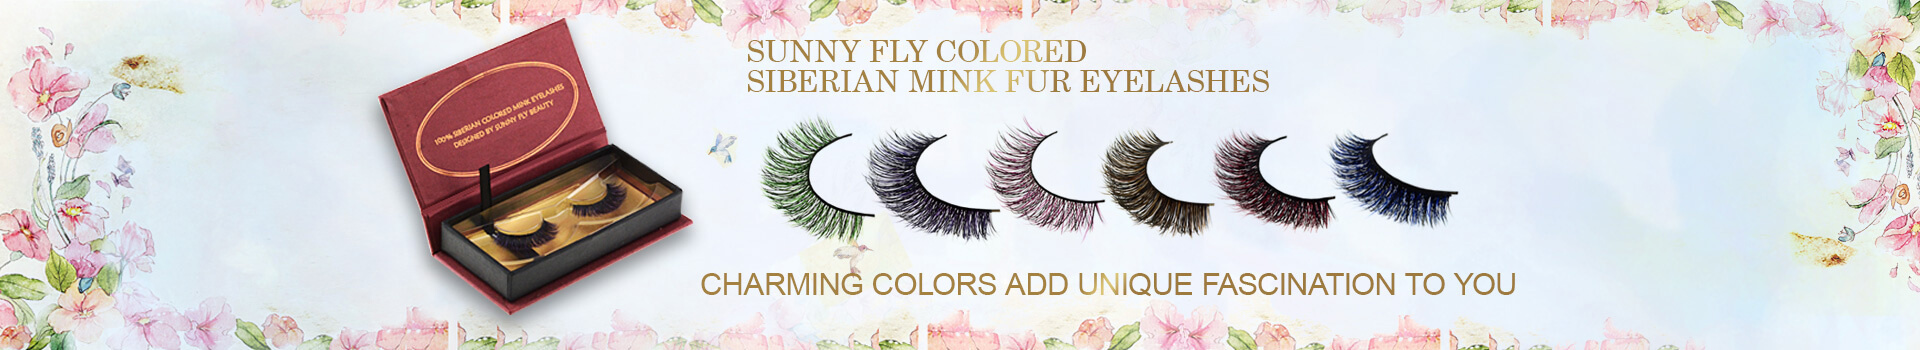 Farvede Siberian Mink Fur Eyelashes